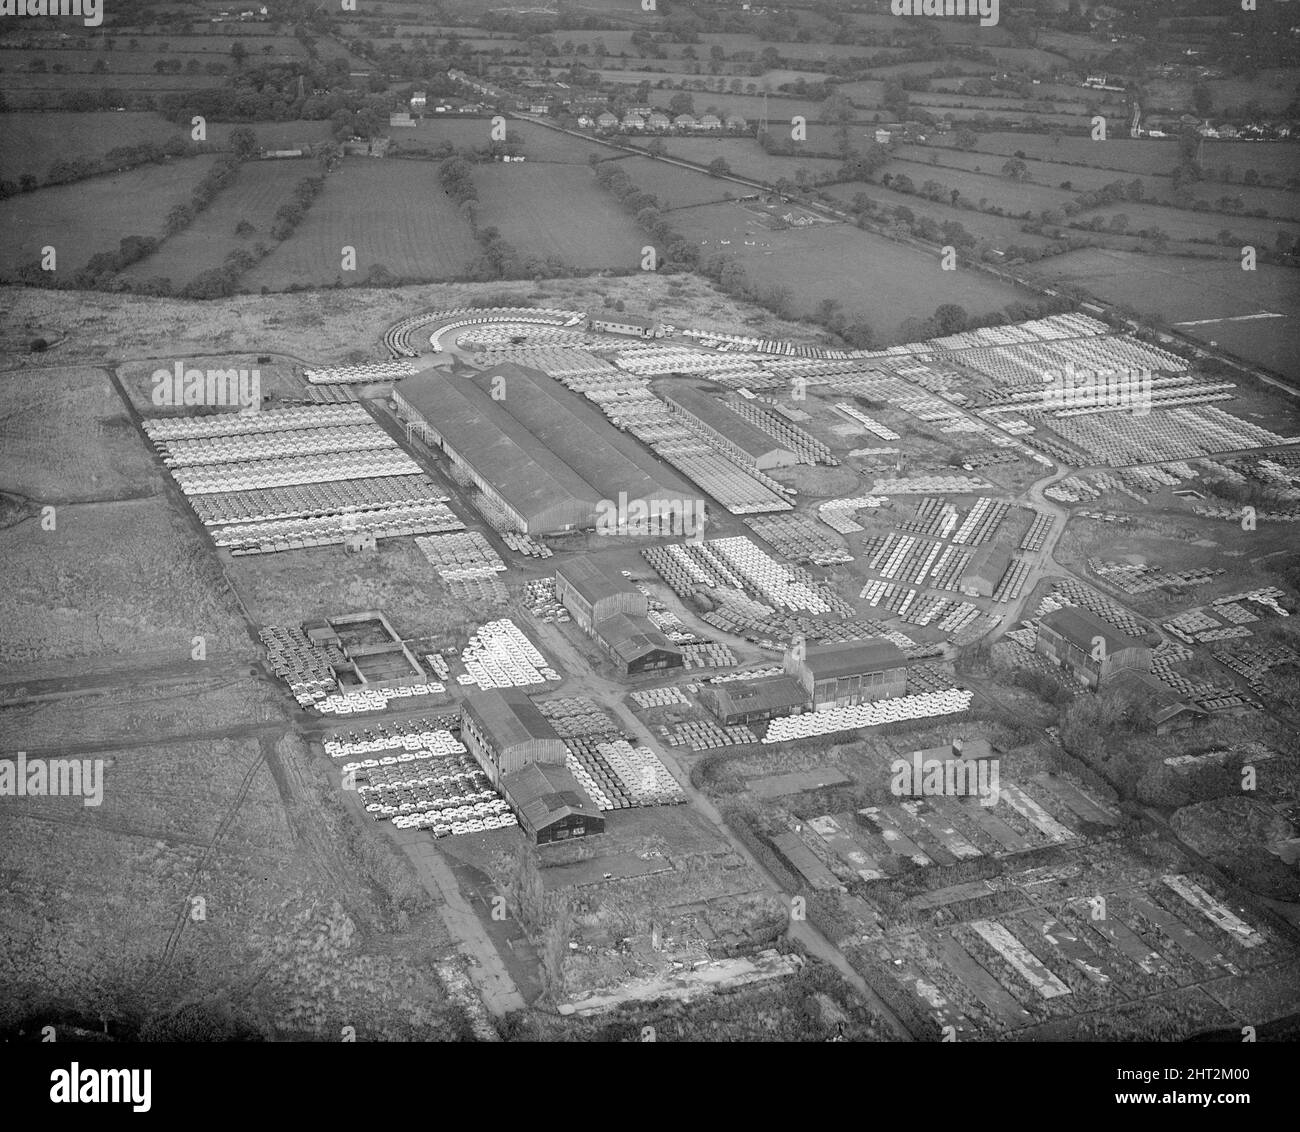 Une vue aérienne montrant quelques-unes des 16000 voitures Austin nouvellement produites qui viennent de sortir de la chaîne de production de BMC travaille à Longbridge, Birmingham. 18th octobre 1966. Banque D'Images